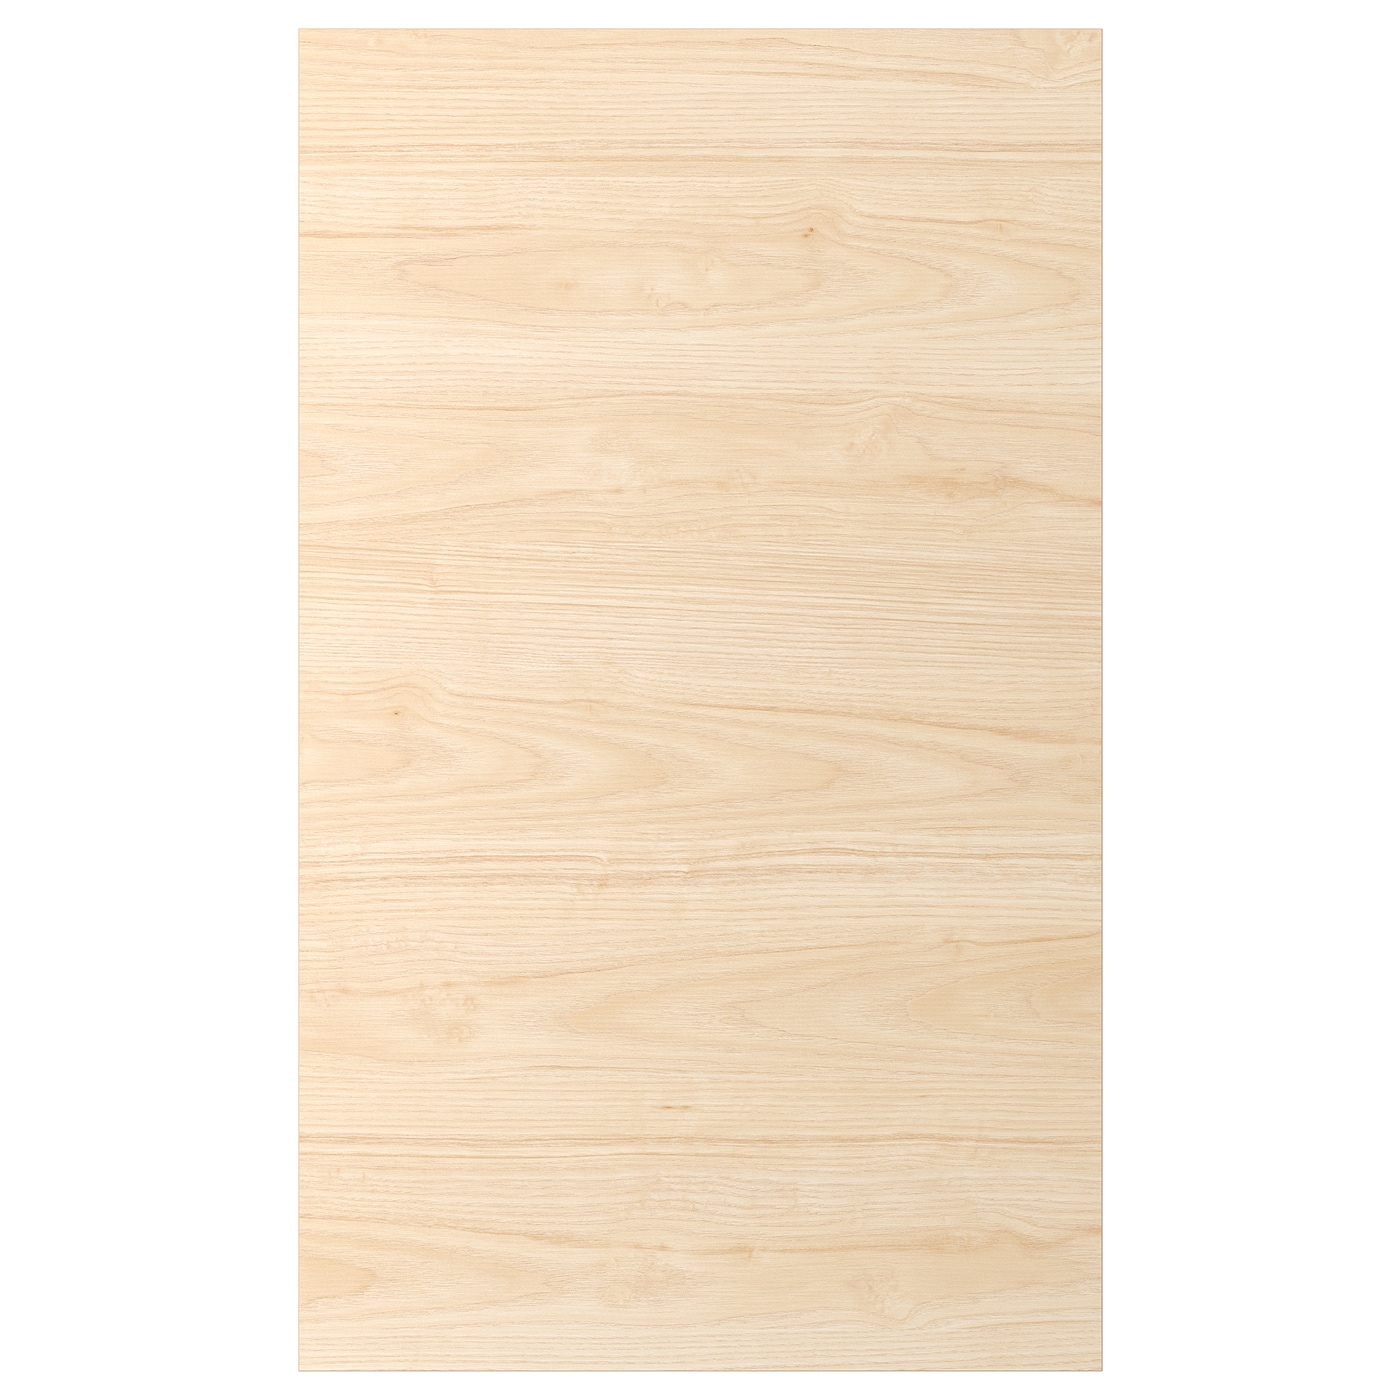 Дверца - IKEA ASKERSUND, 100х60 см, ясень, АСКЕРСУНД ИКЕА